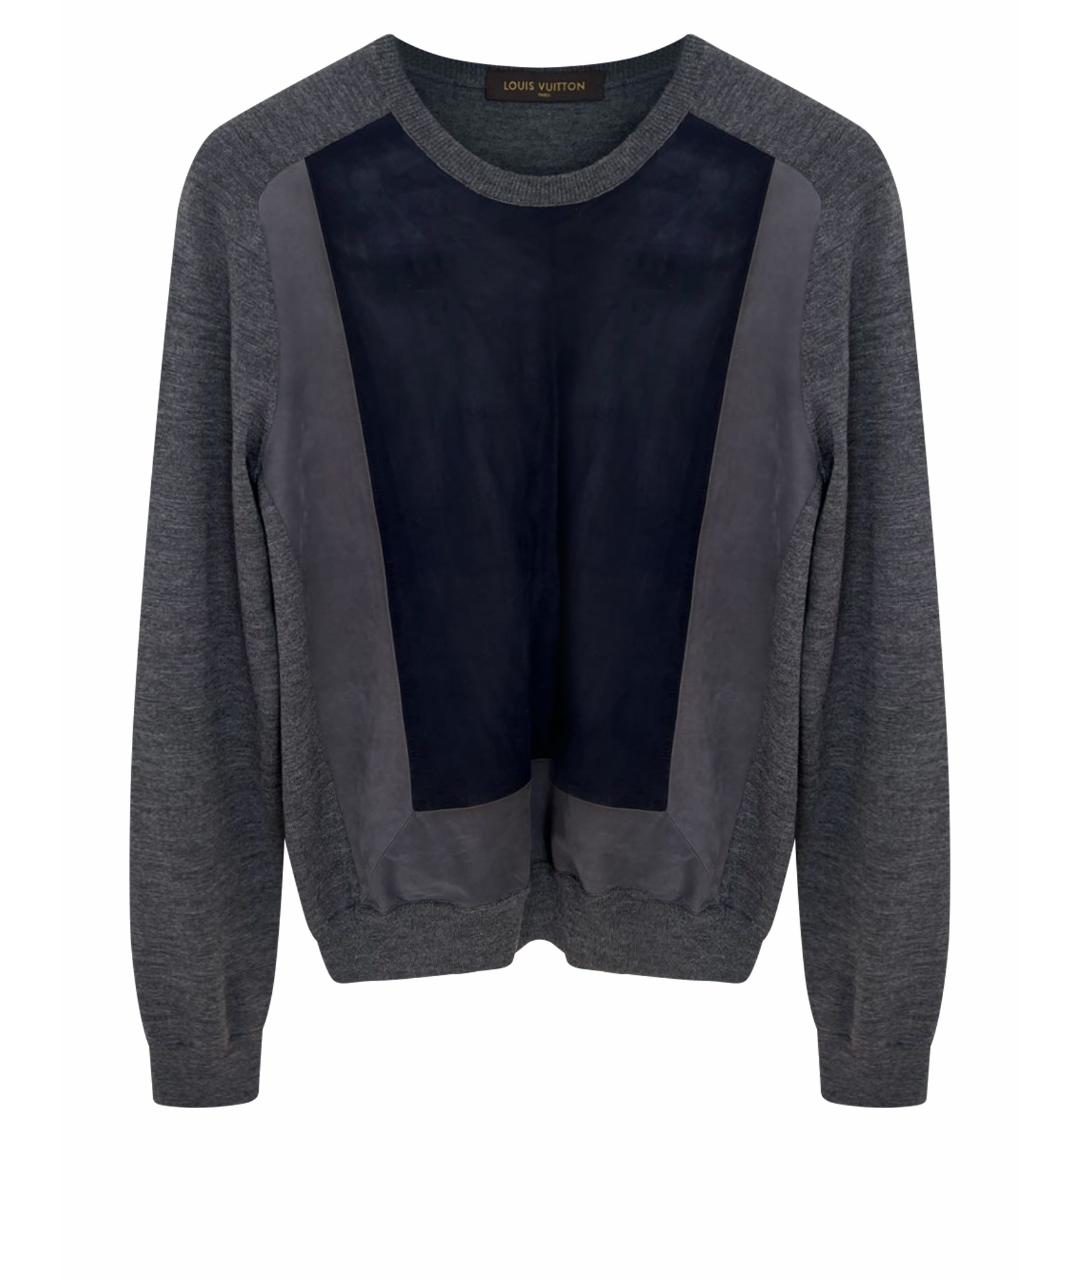 LOUIS VUITTON PRE-OWNED Серый хлопковый джемпер / свитер, фото 1